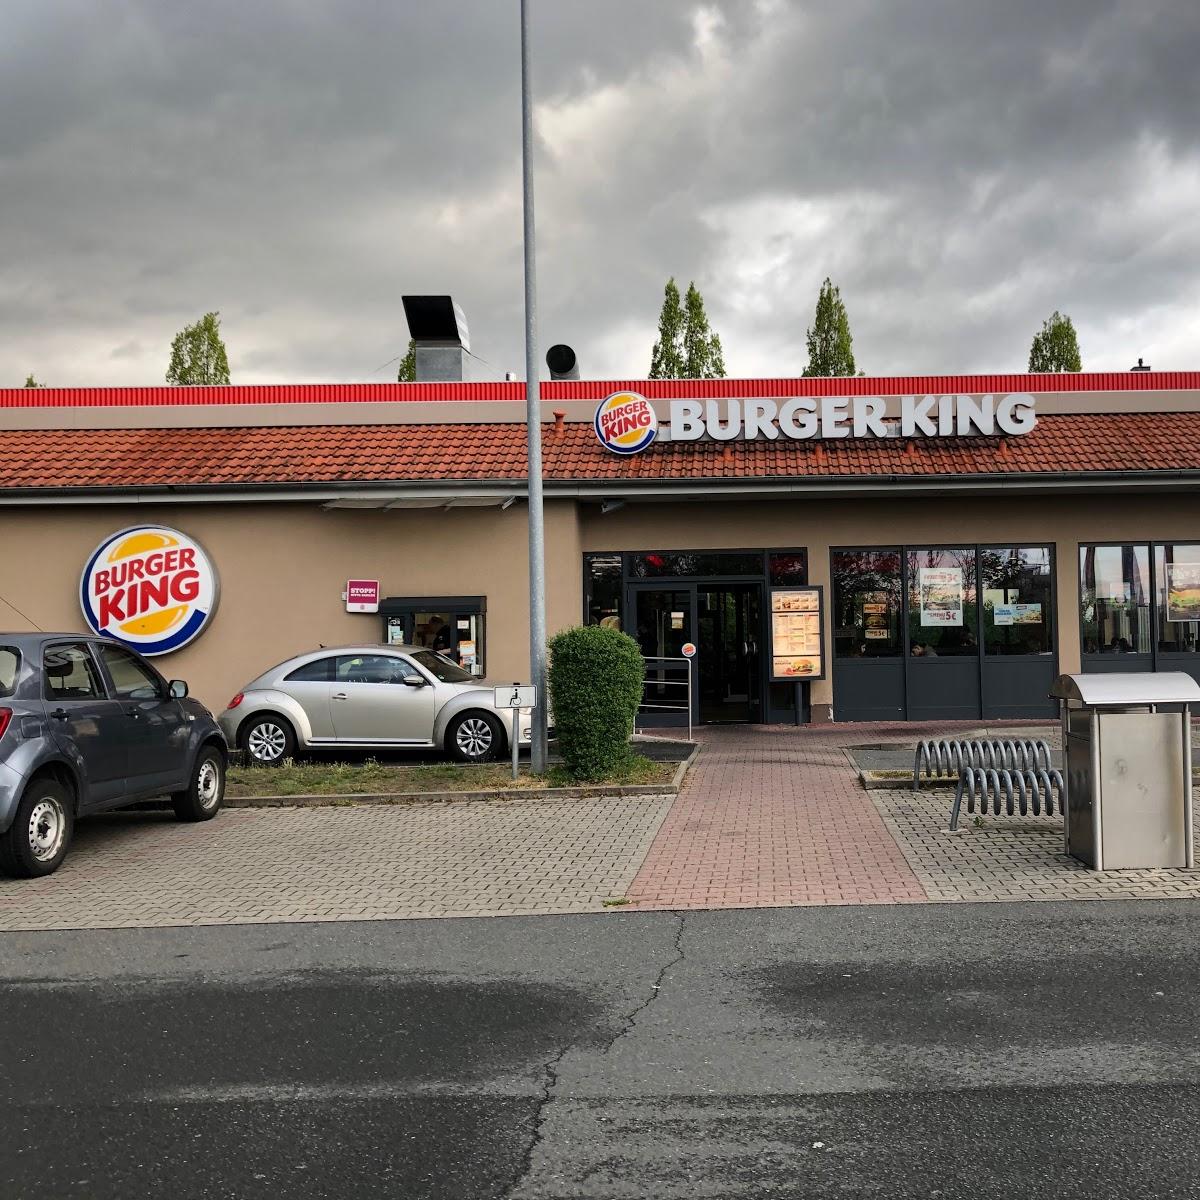 Restaurant "Burger King" in Fürth